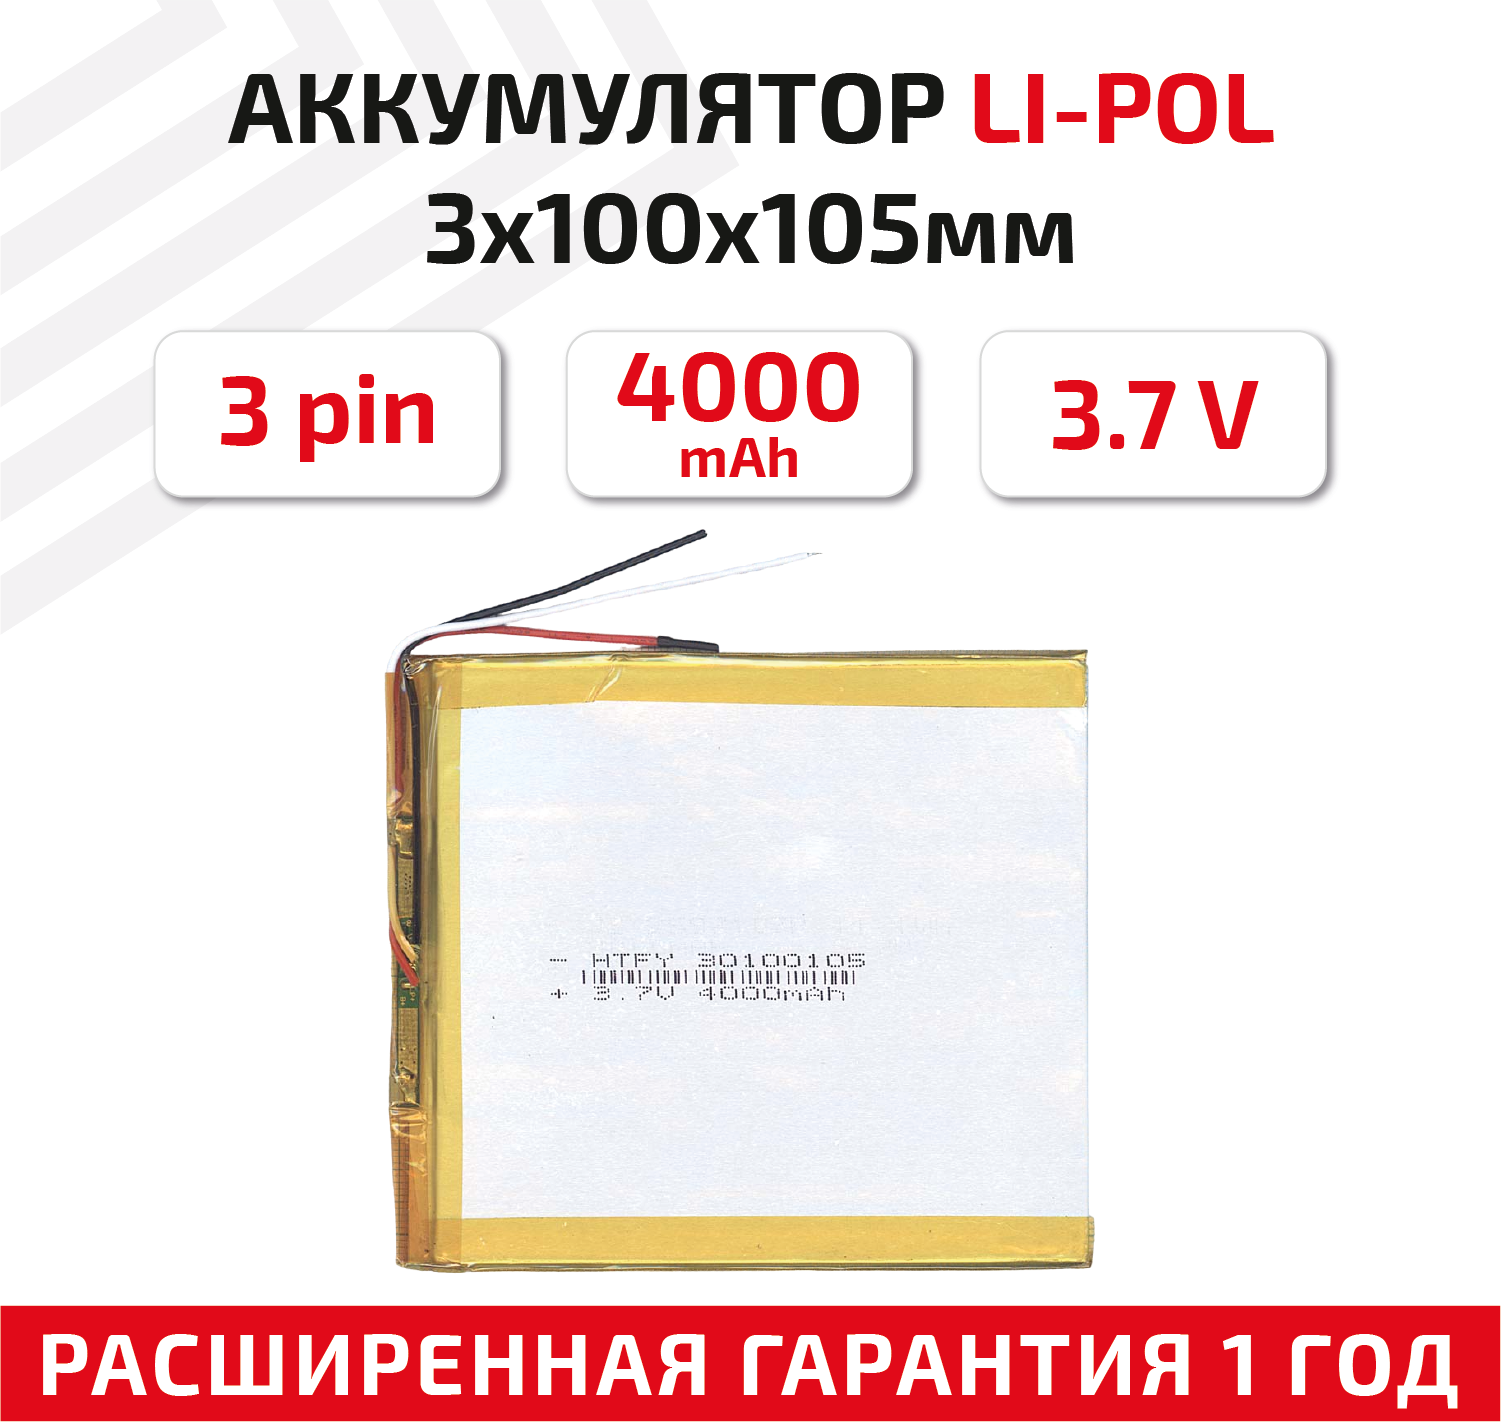 Универсальный аккумулятор (АКБ) для планшета, видеорегистратора и др, 3х100х105мм, 4000мАч, 3.7В, Li-Pol, 3-pin (на 3 провода)